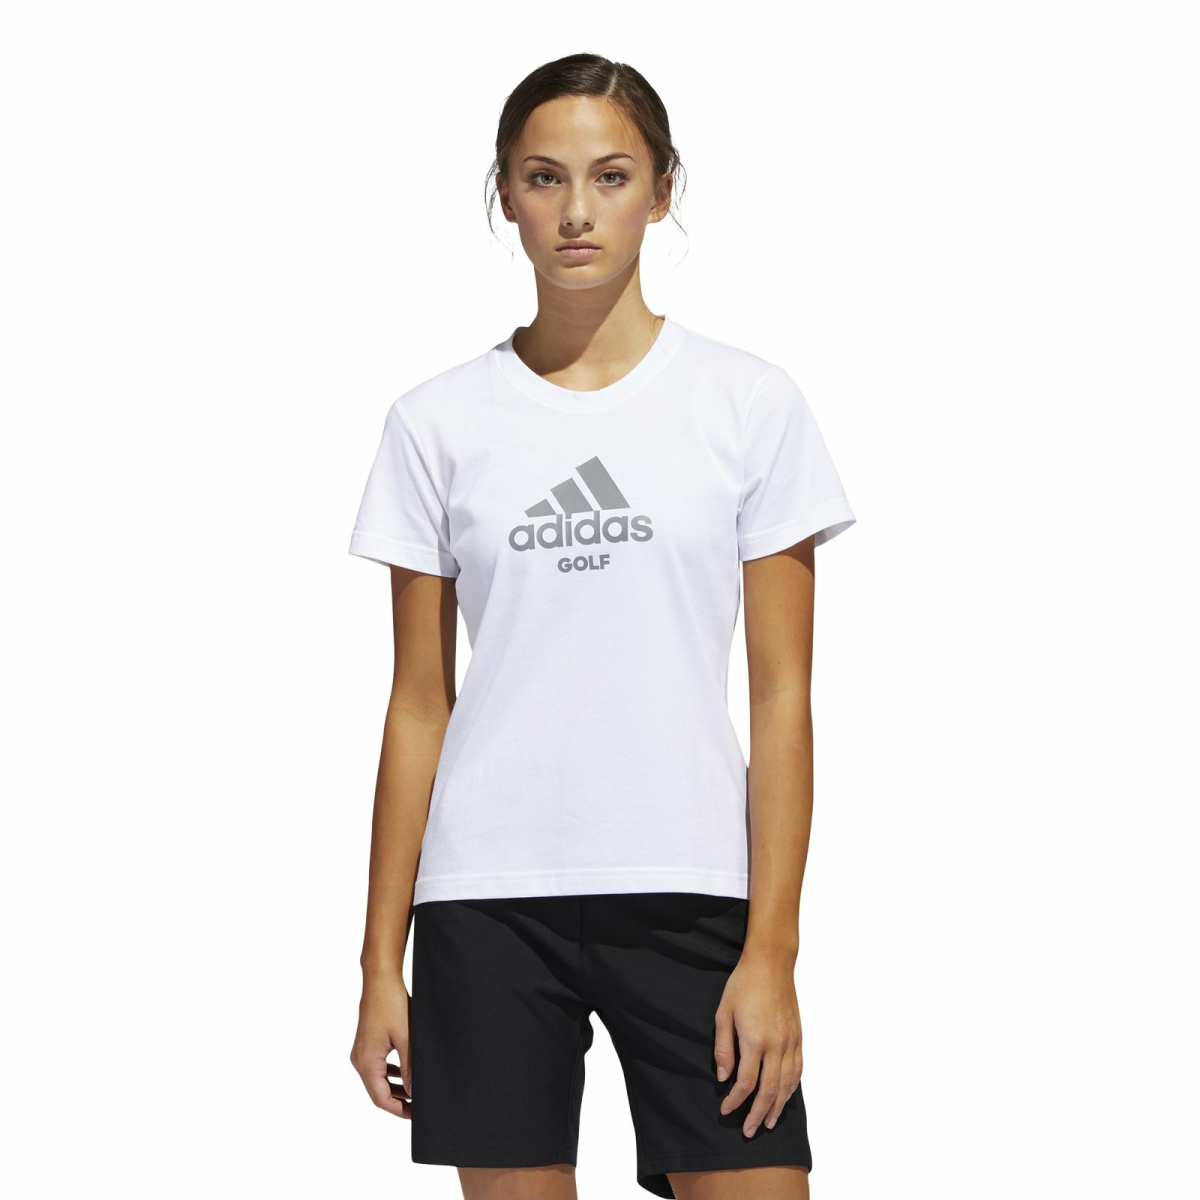 uitlokken specificeren Dodelijk adidas Golf Tee T-Shirt Damen, 27,99 €